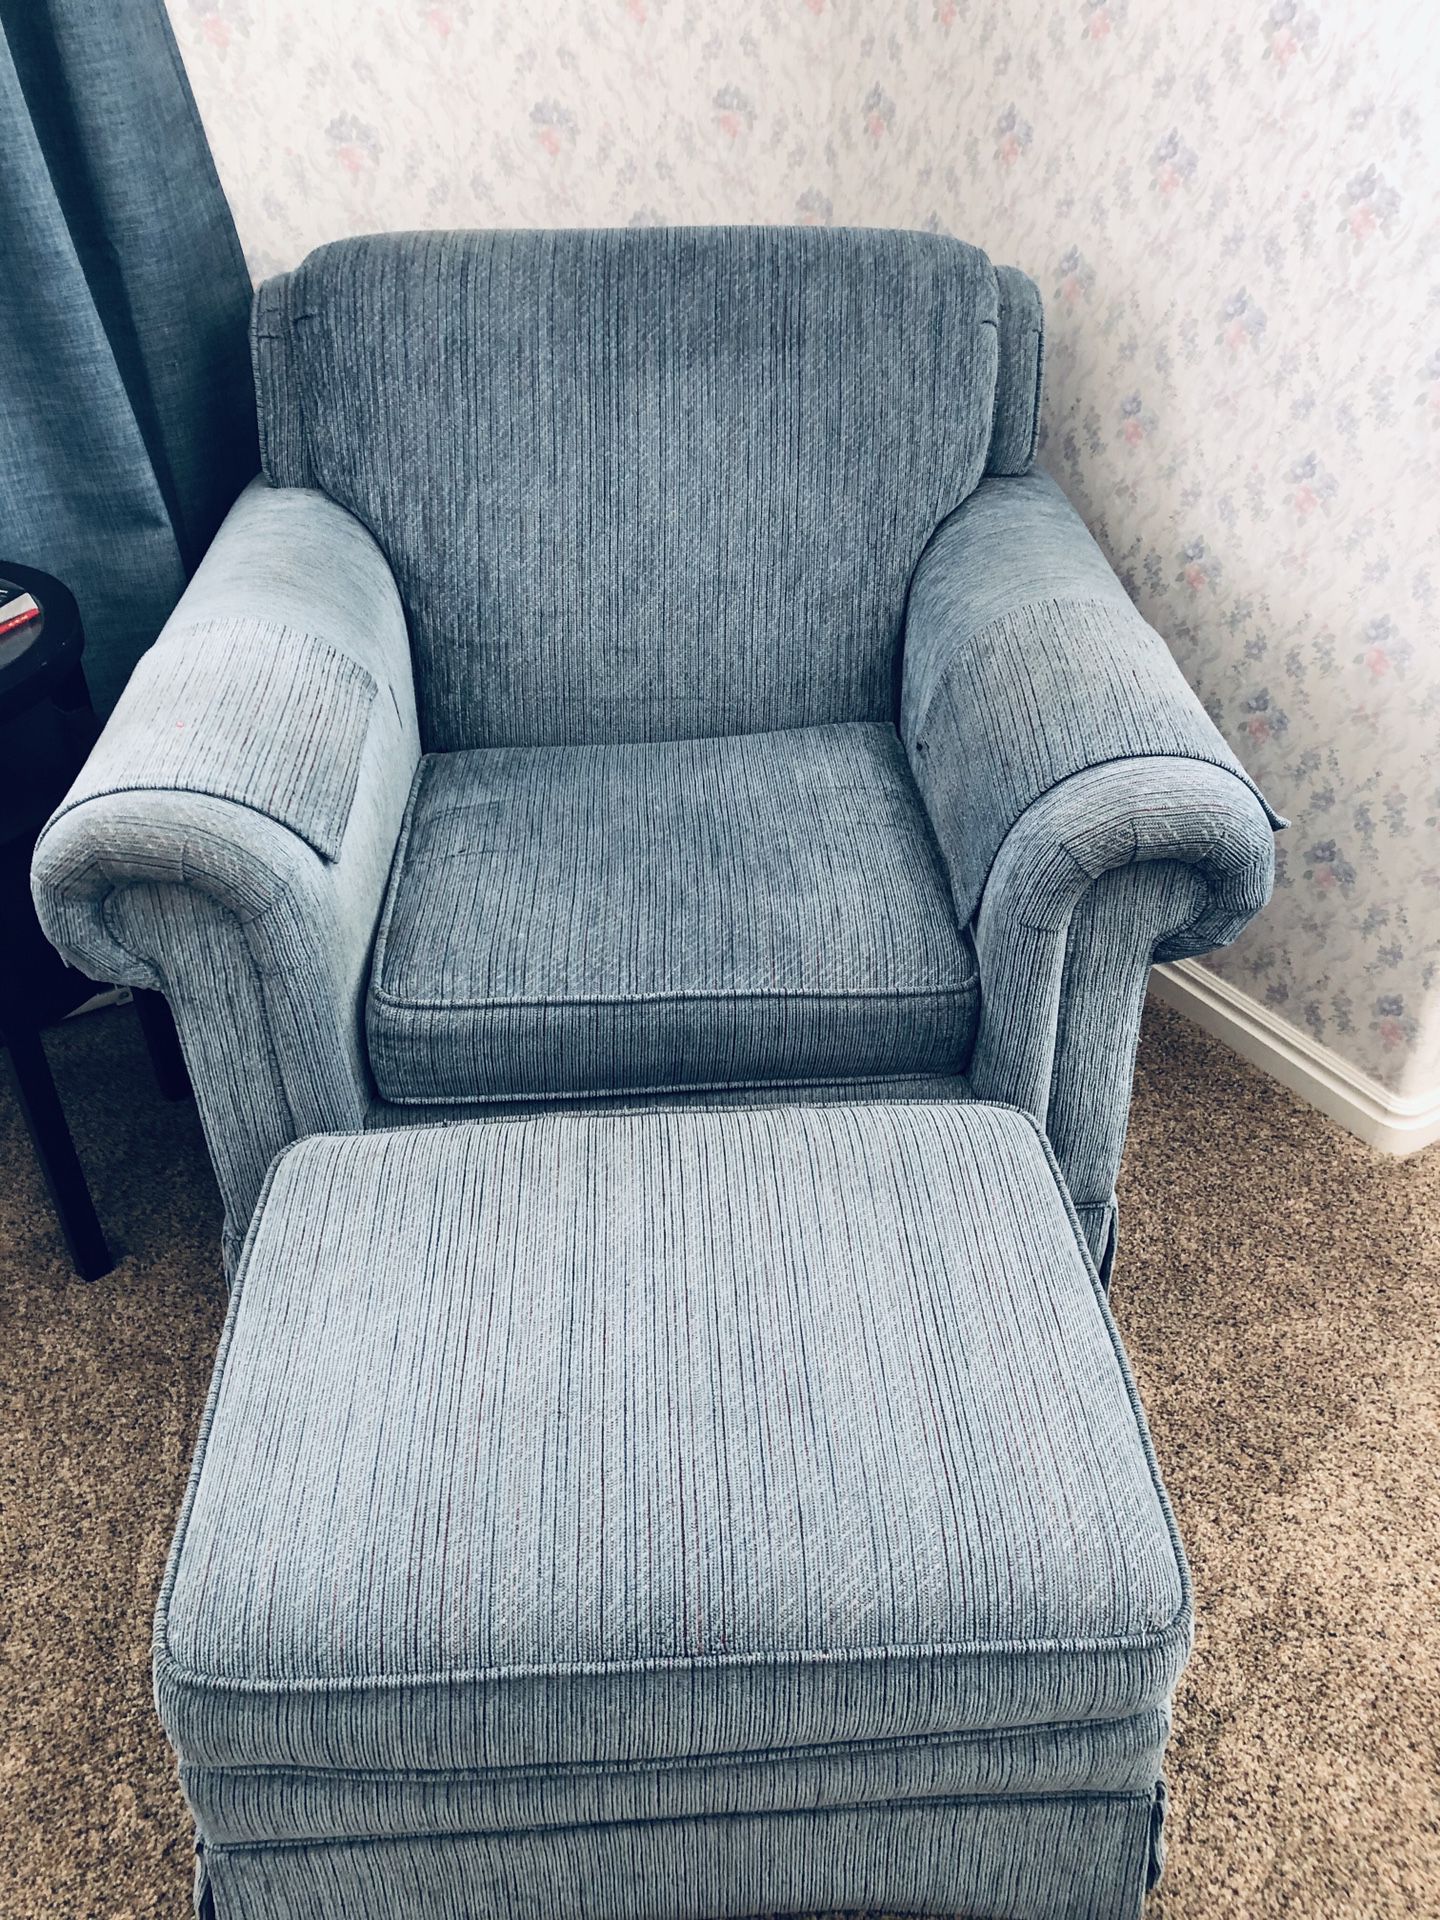 Beautiful Flexsteel Blue Cloth Chair Lounger!